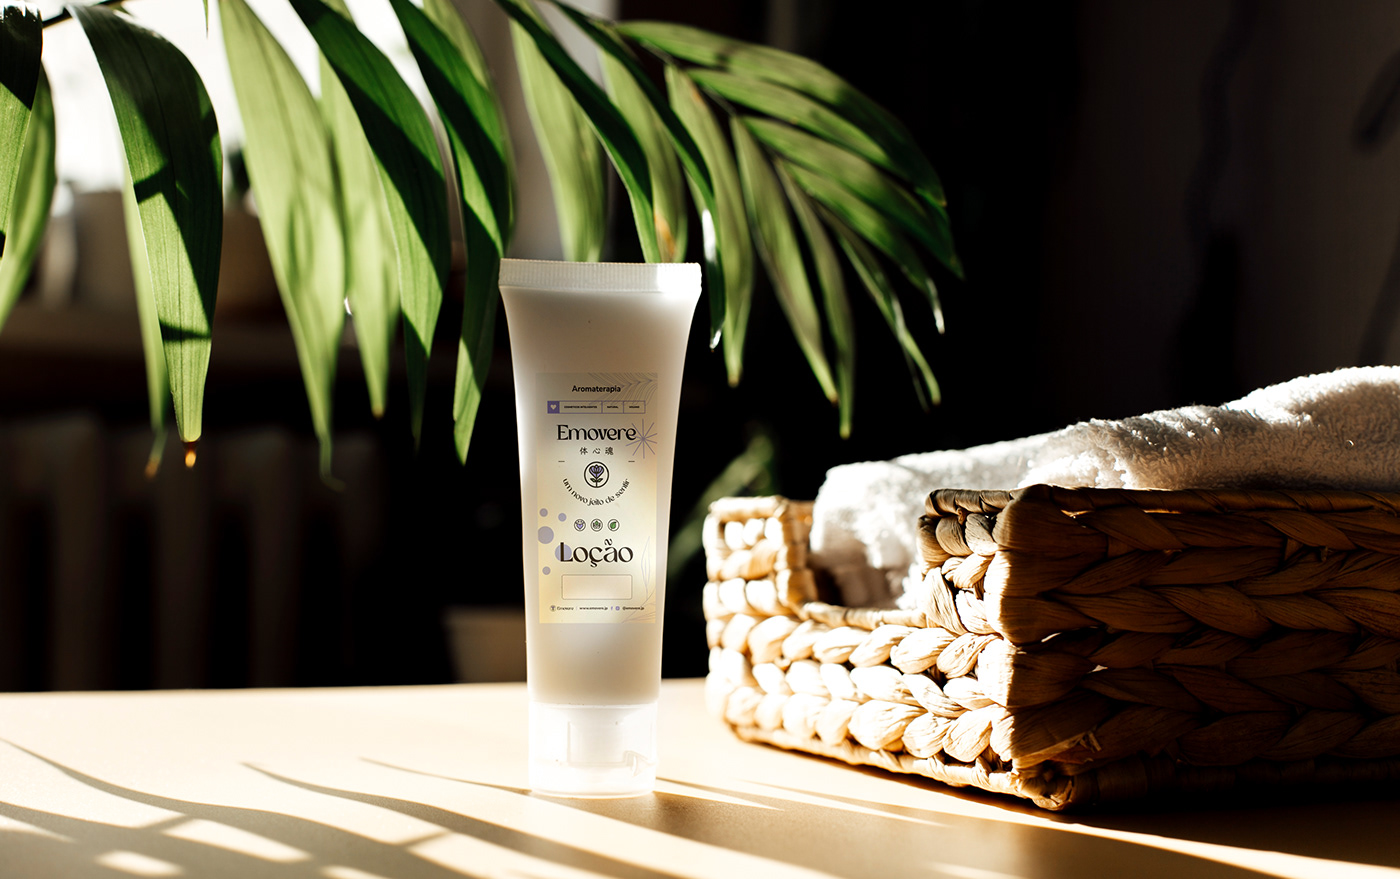 Aromatherapy Cosmetic Cosméticos essential oils natural óleos essenciais organic packaging design sabonete artesanal soap